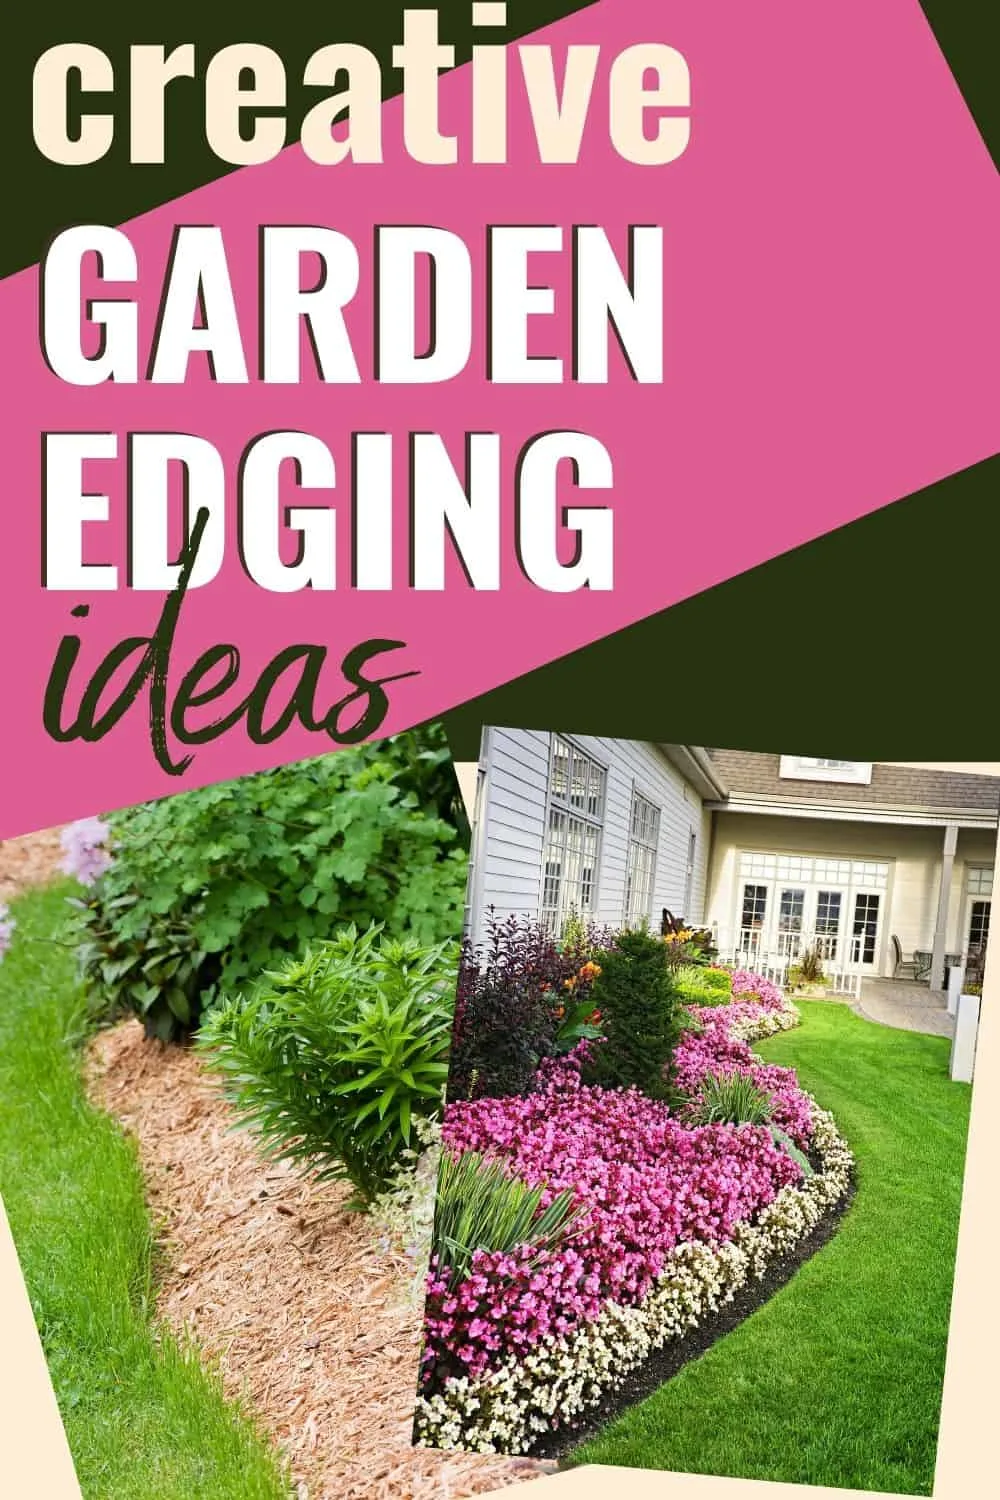 Creative garden edging ideas